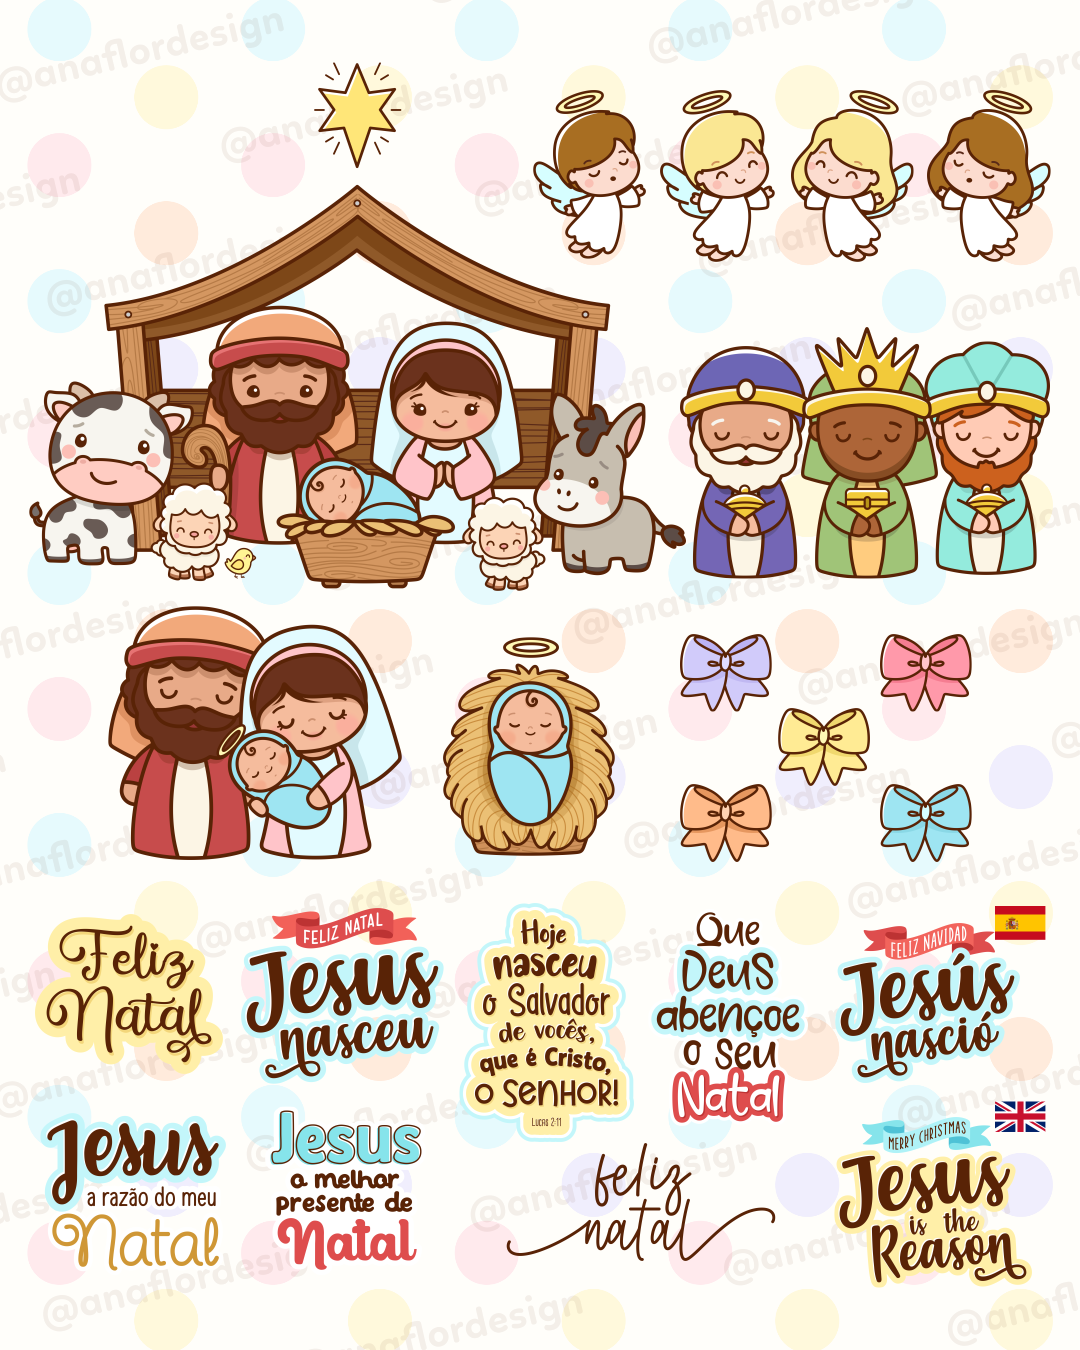 Natal e o Cristão